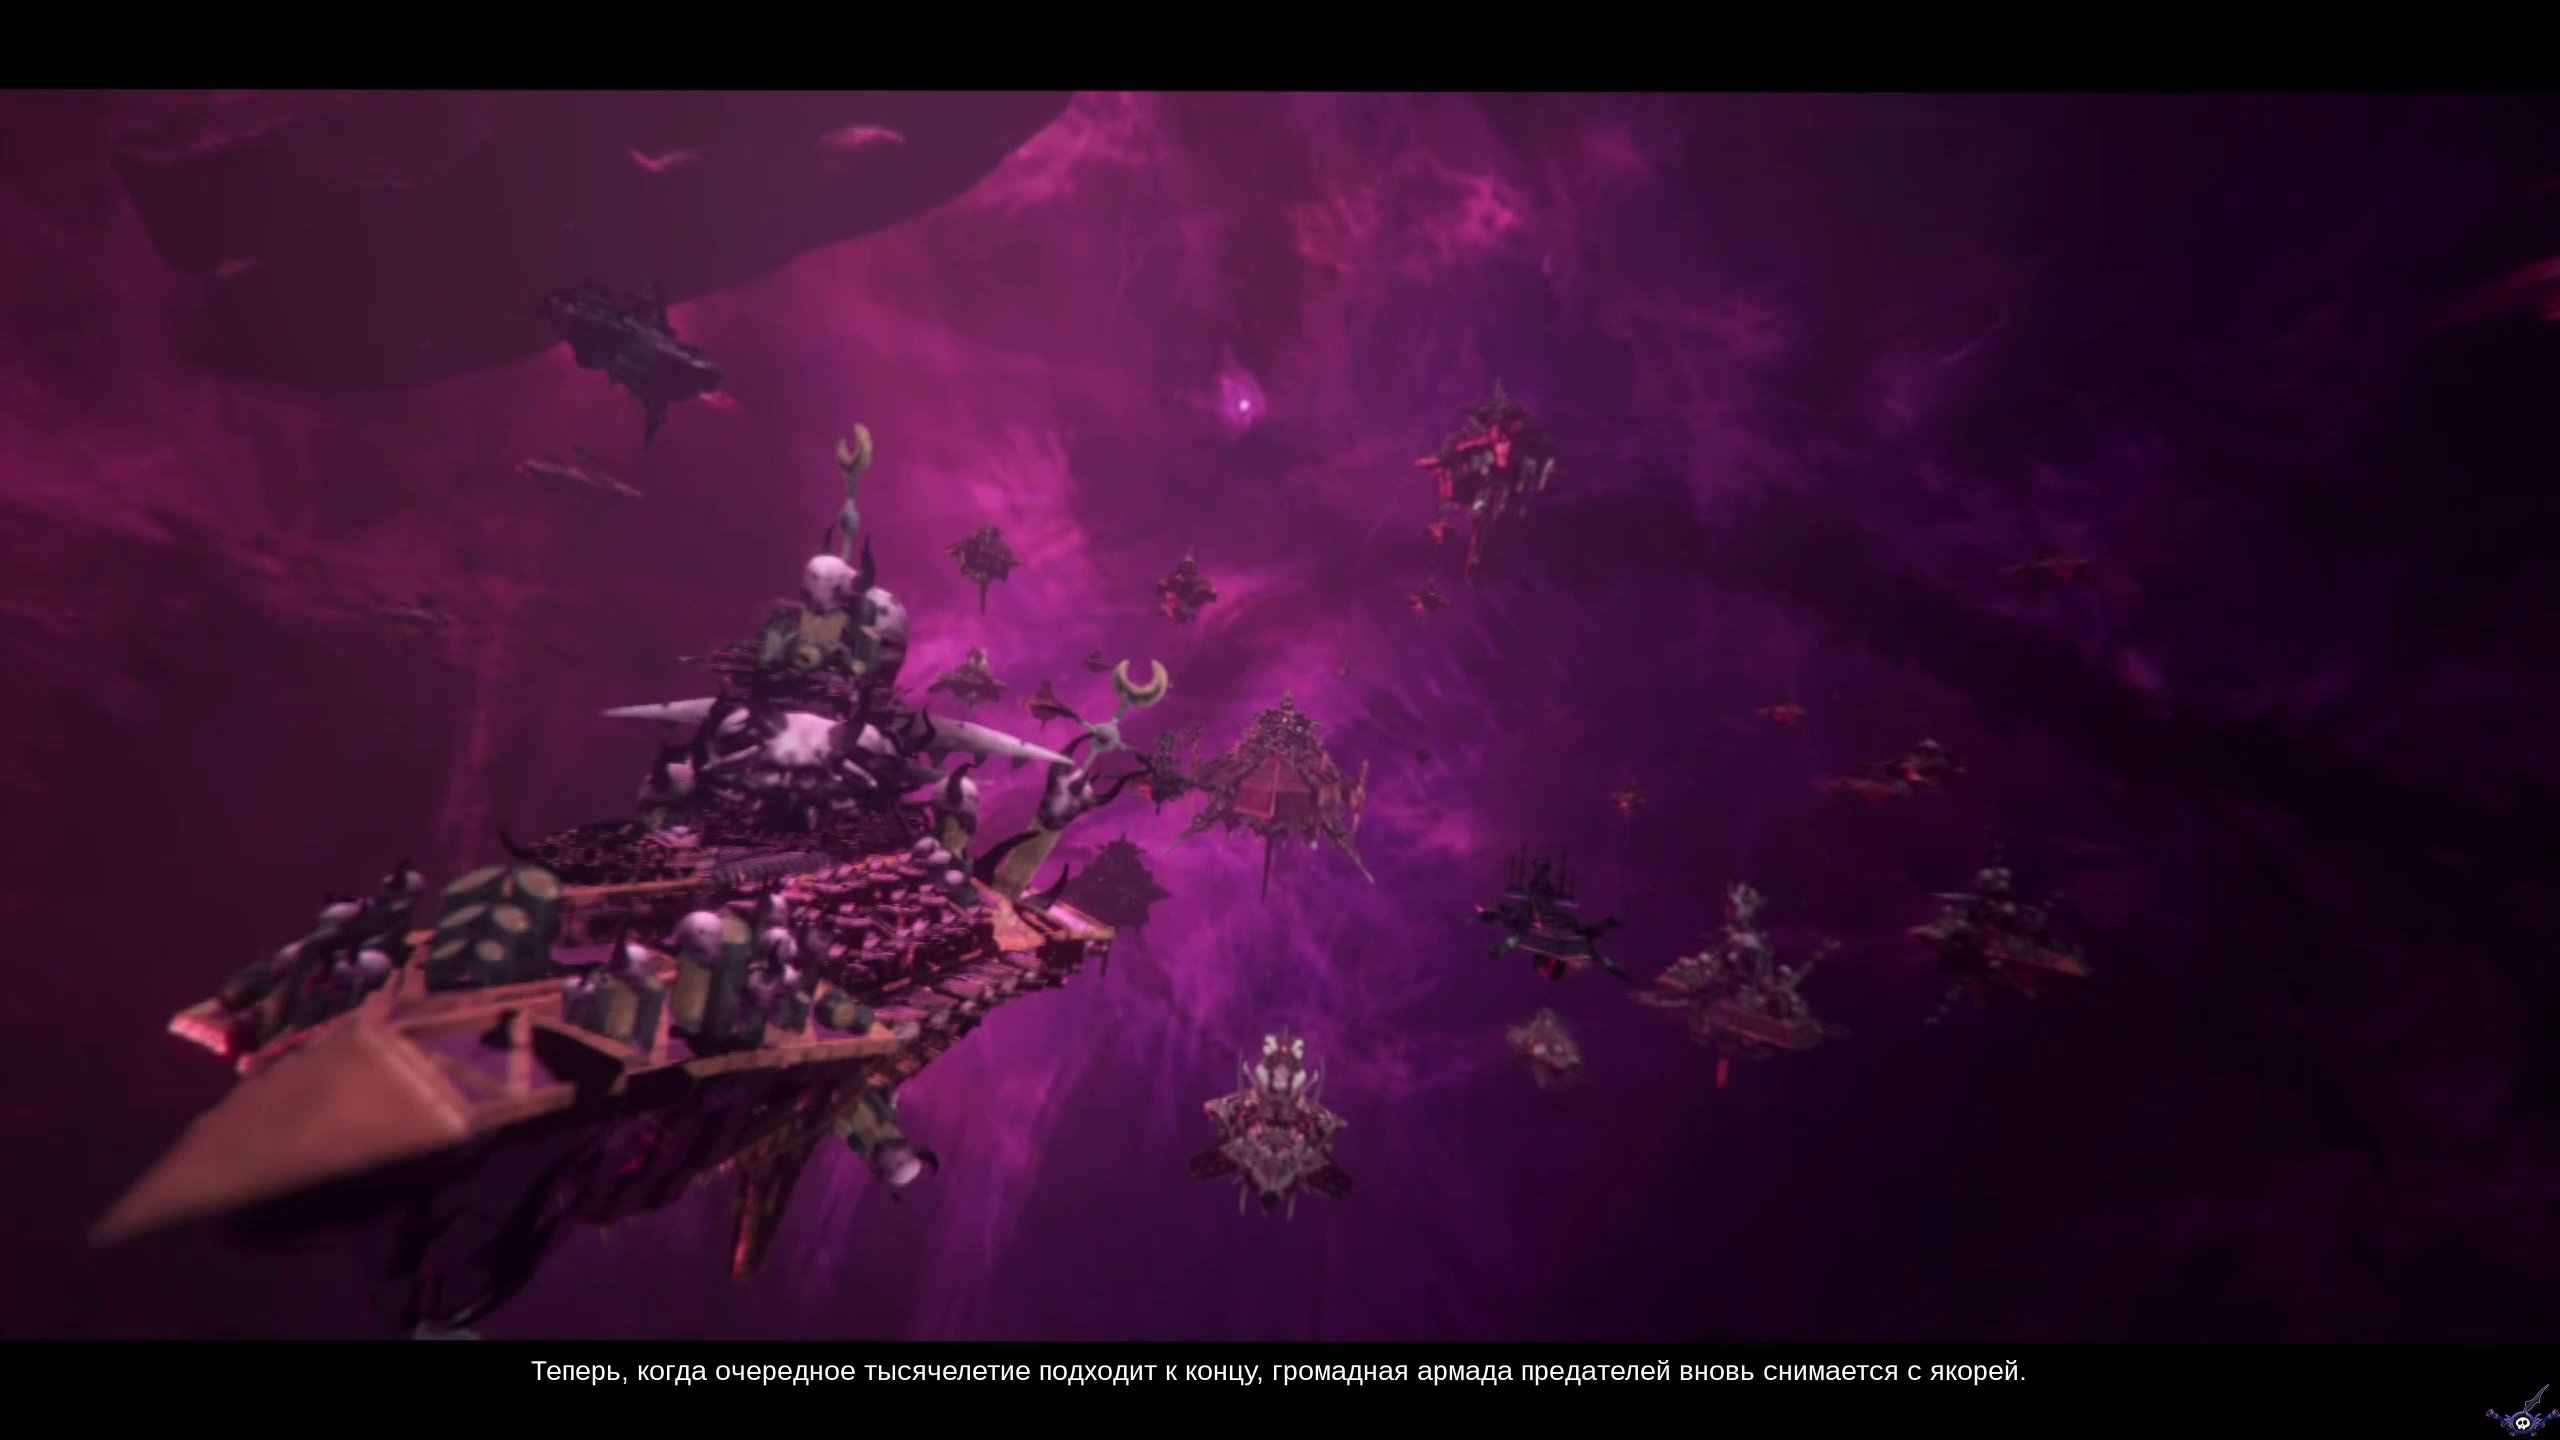 battlefleet-gothic-armada-ii-screenshot